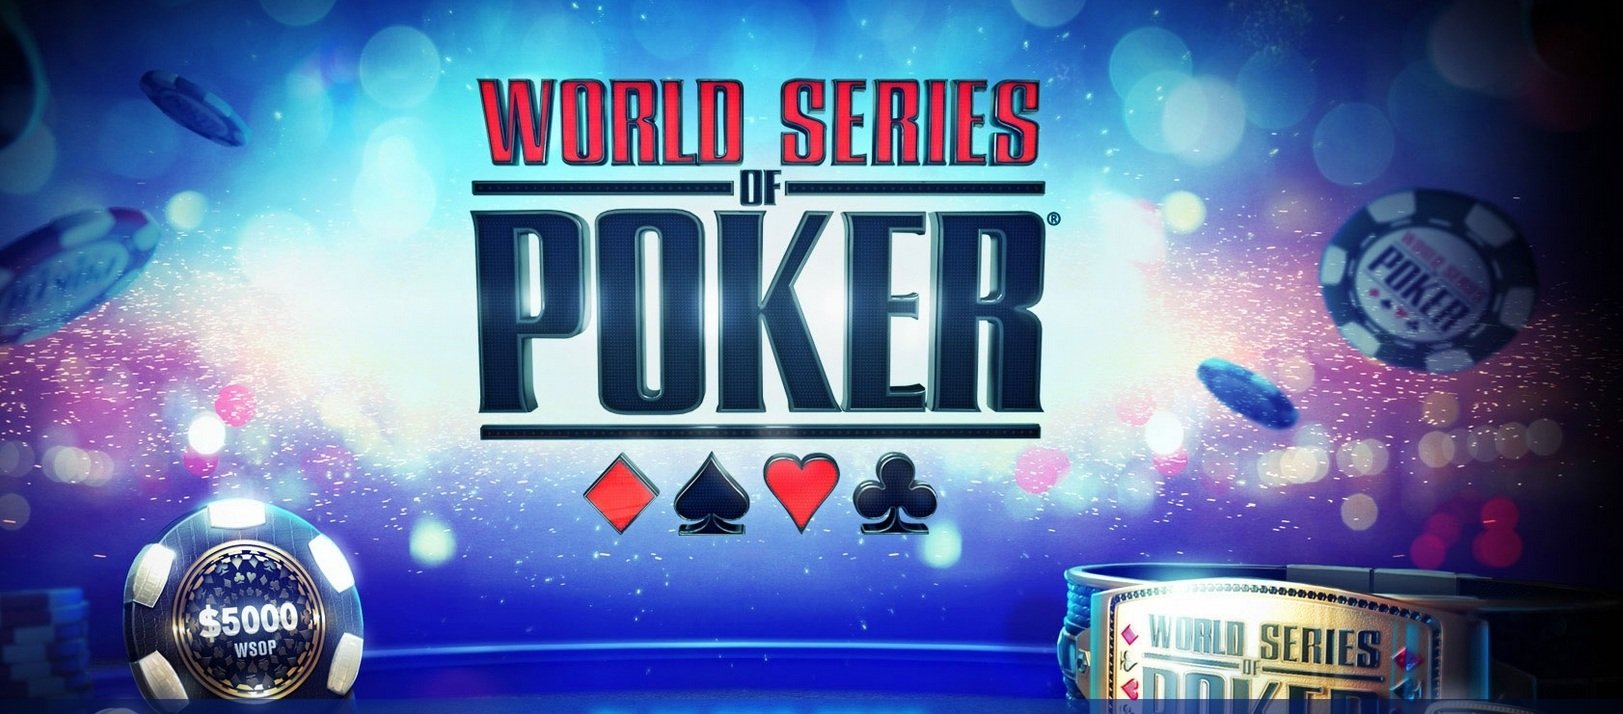 World Series of Poker Logo, Pokerchips